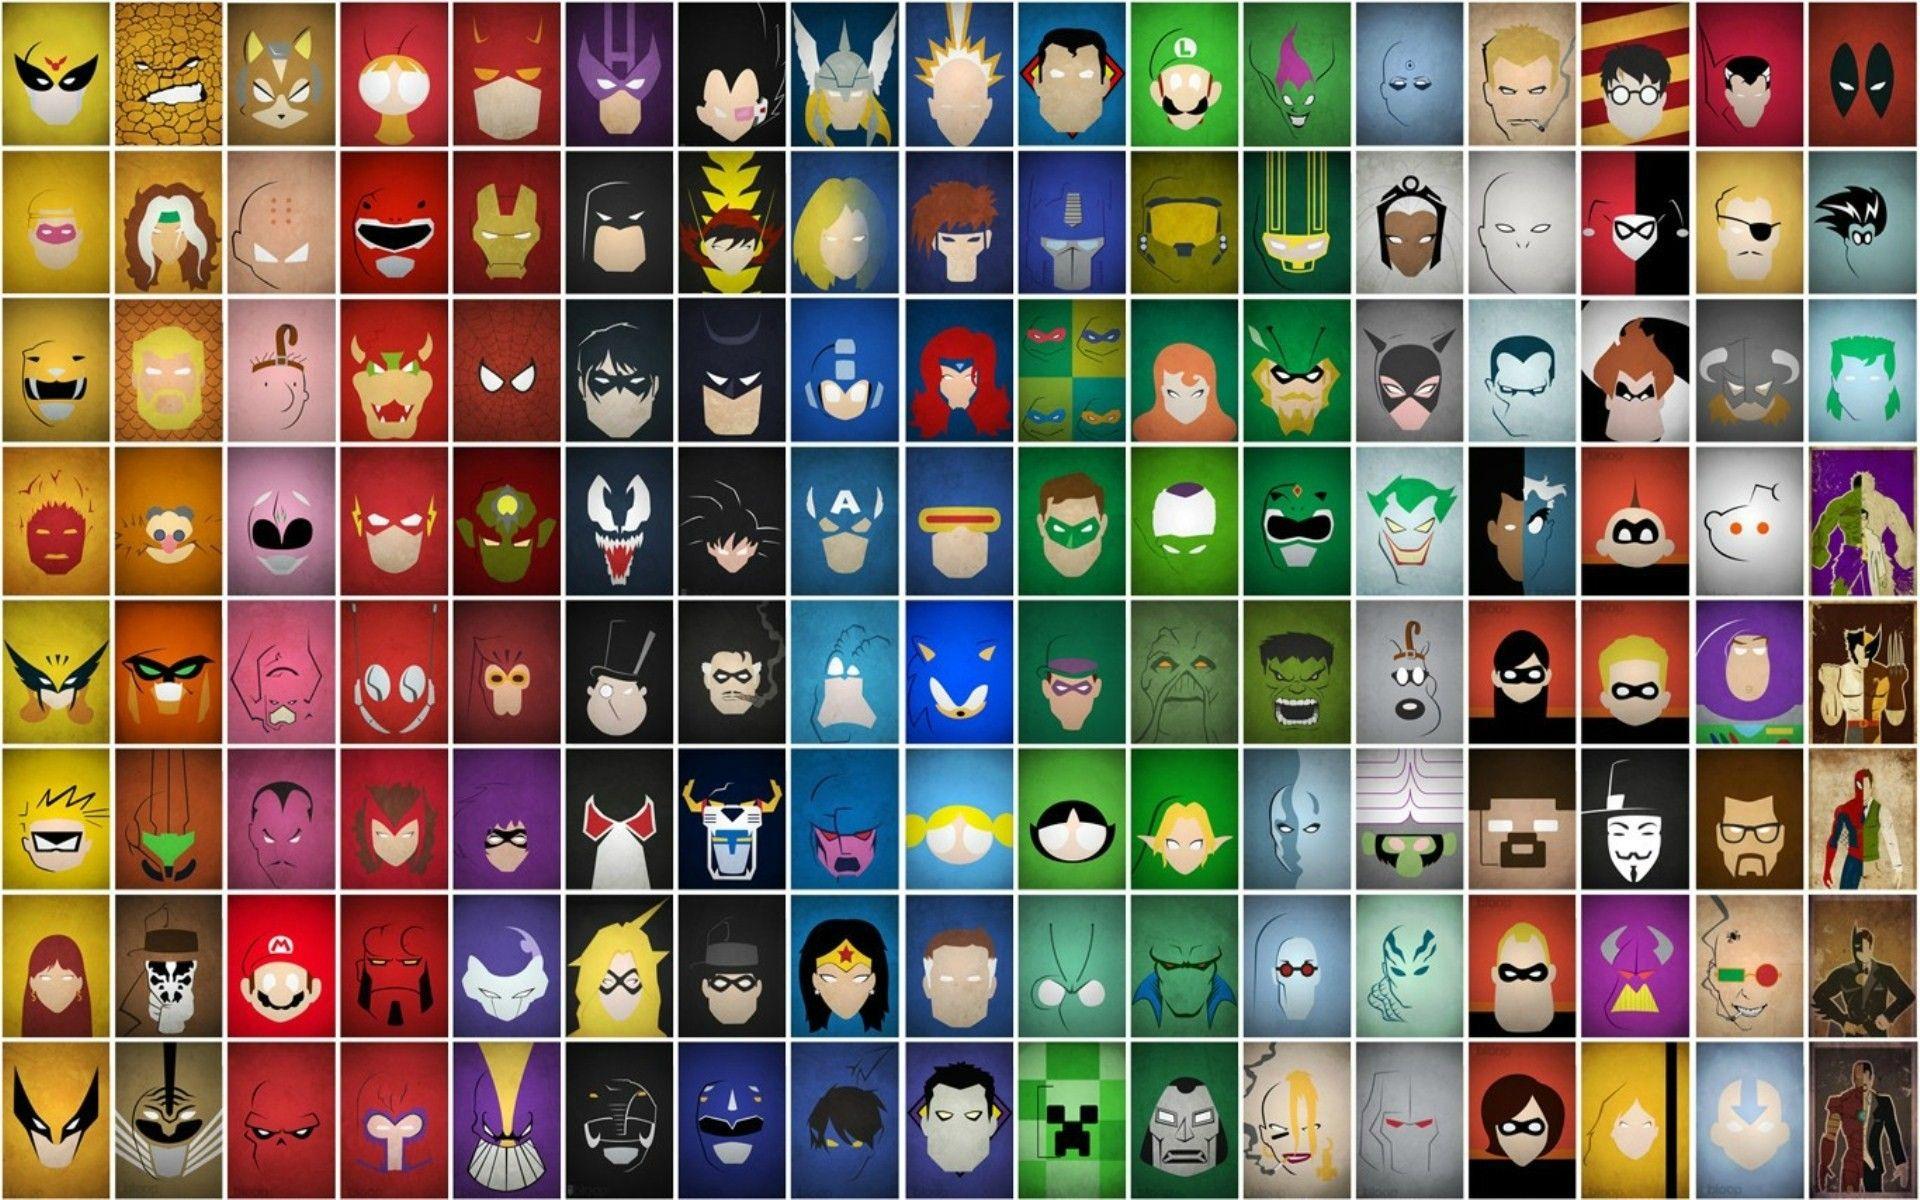 Every Superhero Logo - Amazon.com: Superhero Memory Match: Appstore for Android